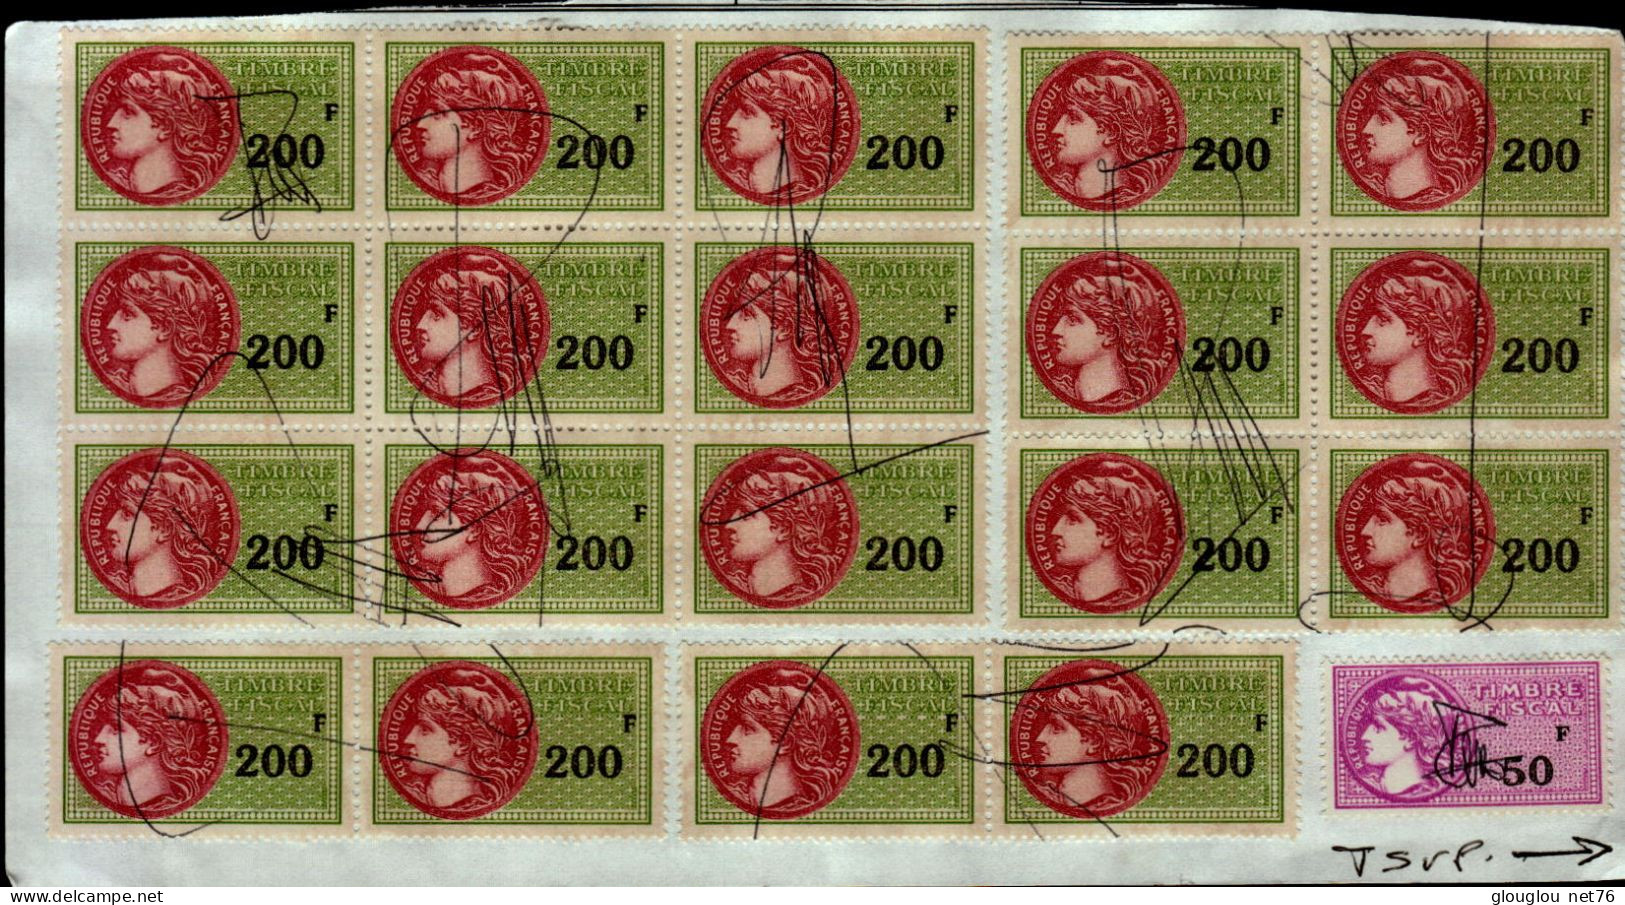 19 TIMBRES FISCAUX A 200 F ET 1 A 150 F    COLLES SUR UNE FEUILLE - Stamps